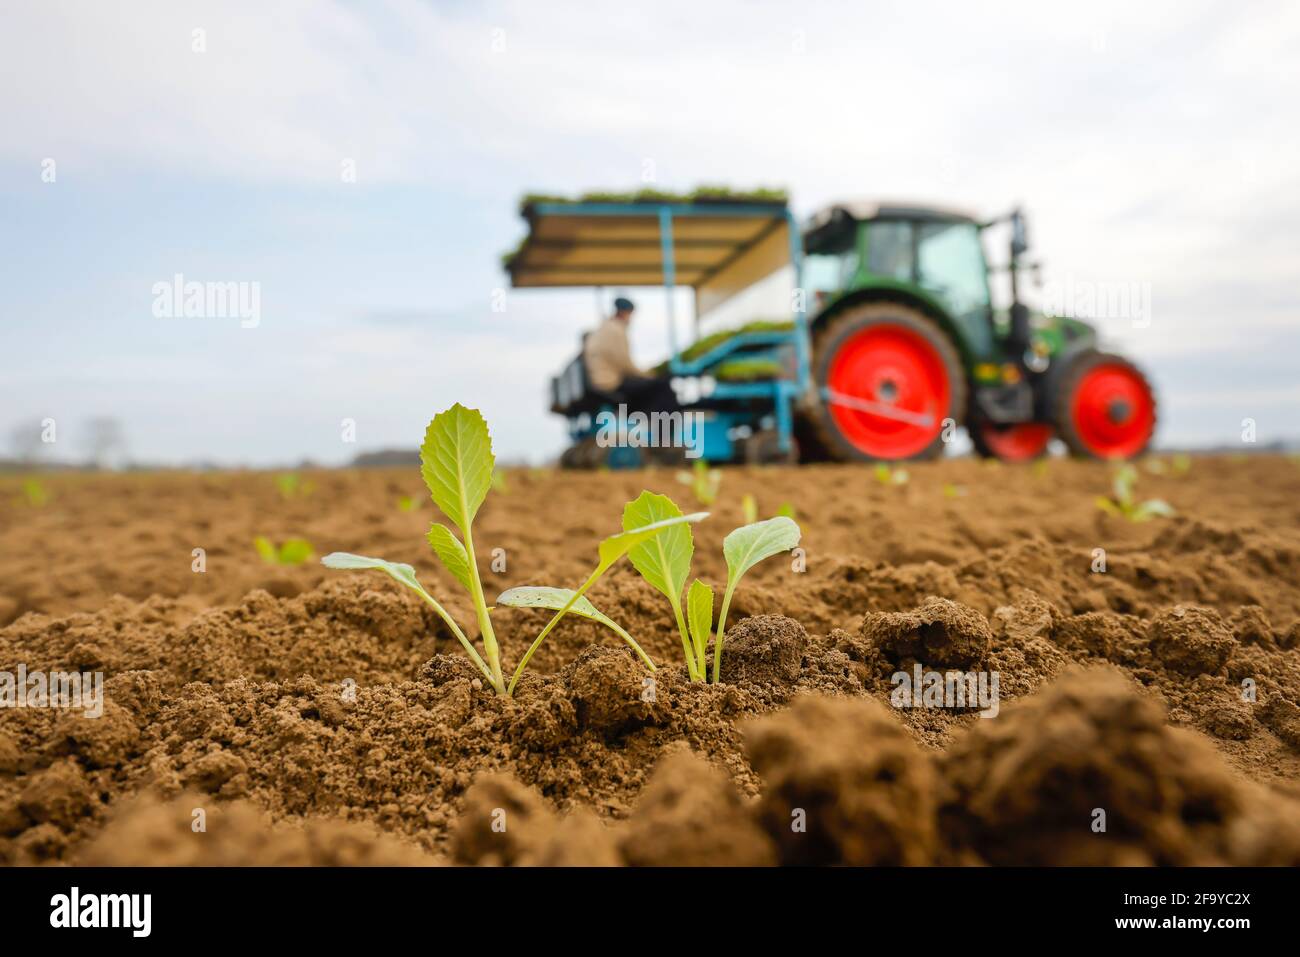 Welver, Kreis Soest, Sauerland, Nordrhein-Westfalen, Deutschland - Gemüseanbau, Feldarbeiter an einer Pflanzpflanze Weißkohlpflanzen i Stockfoto